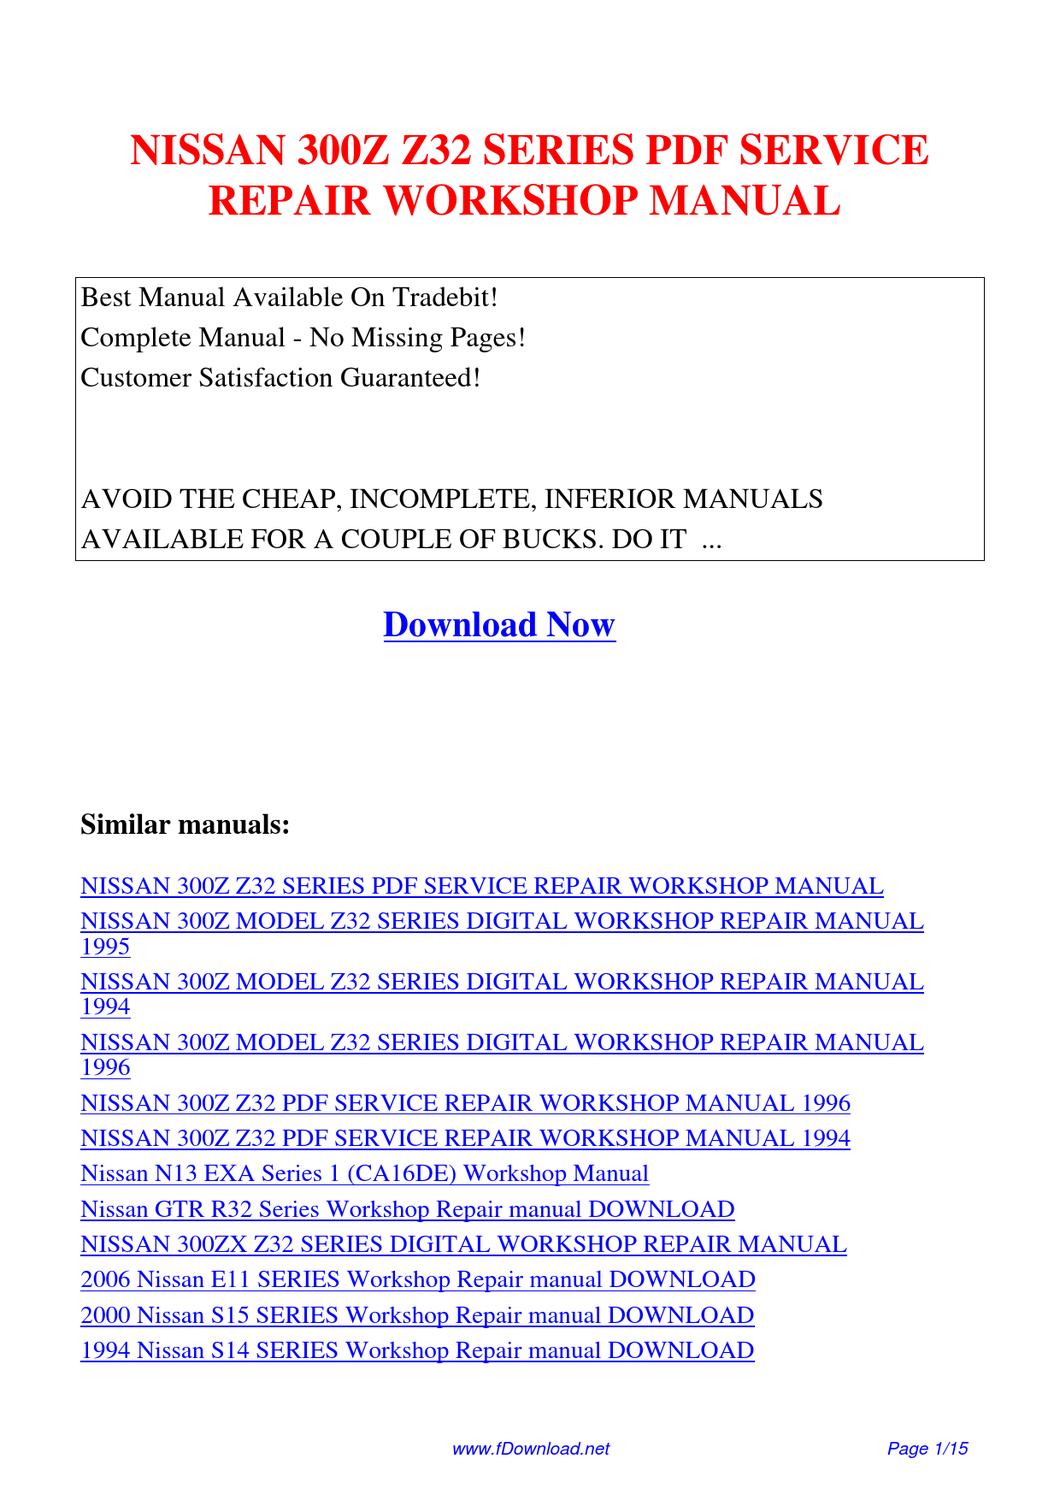 2006 nissan pathfinder workshop manual download